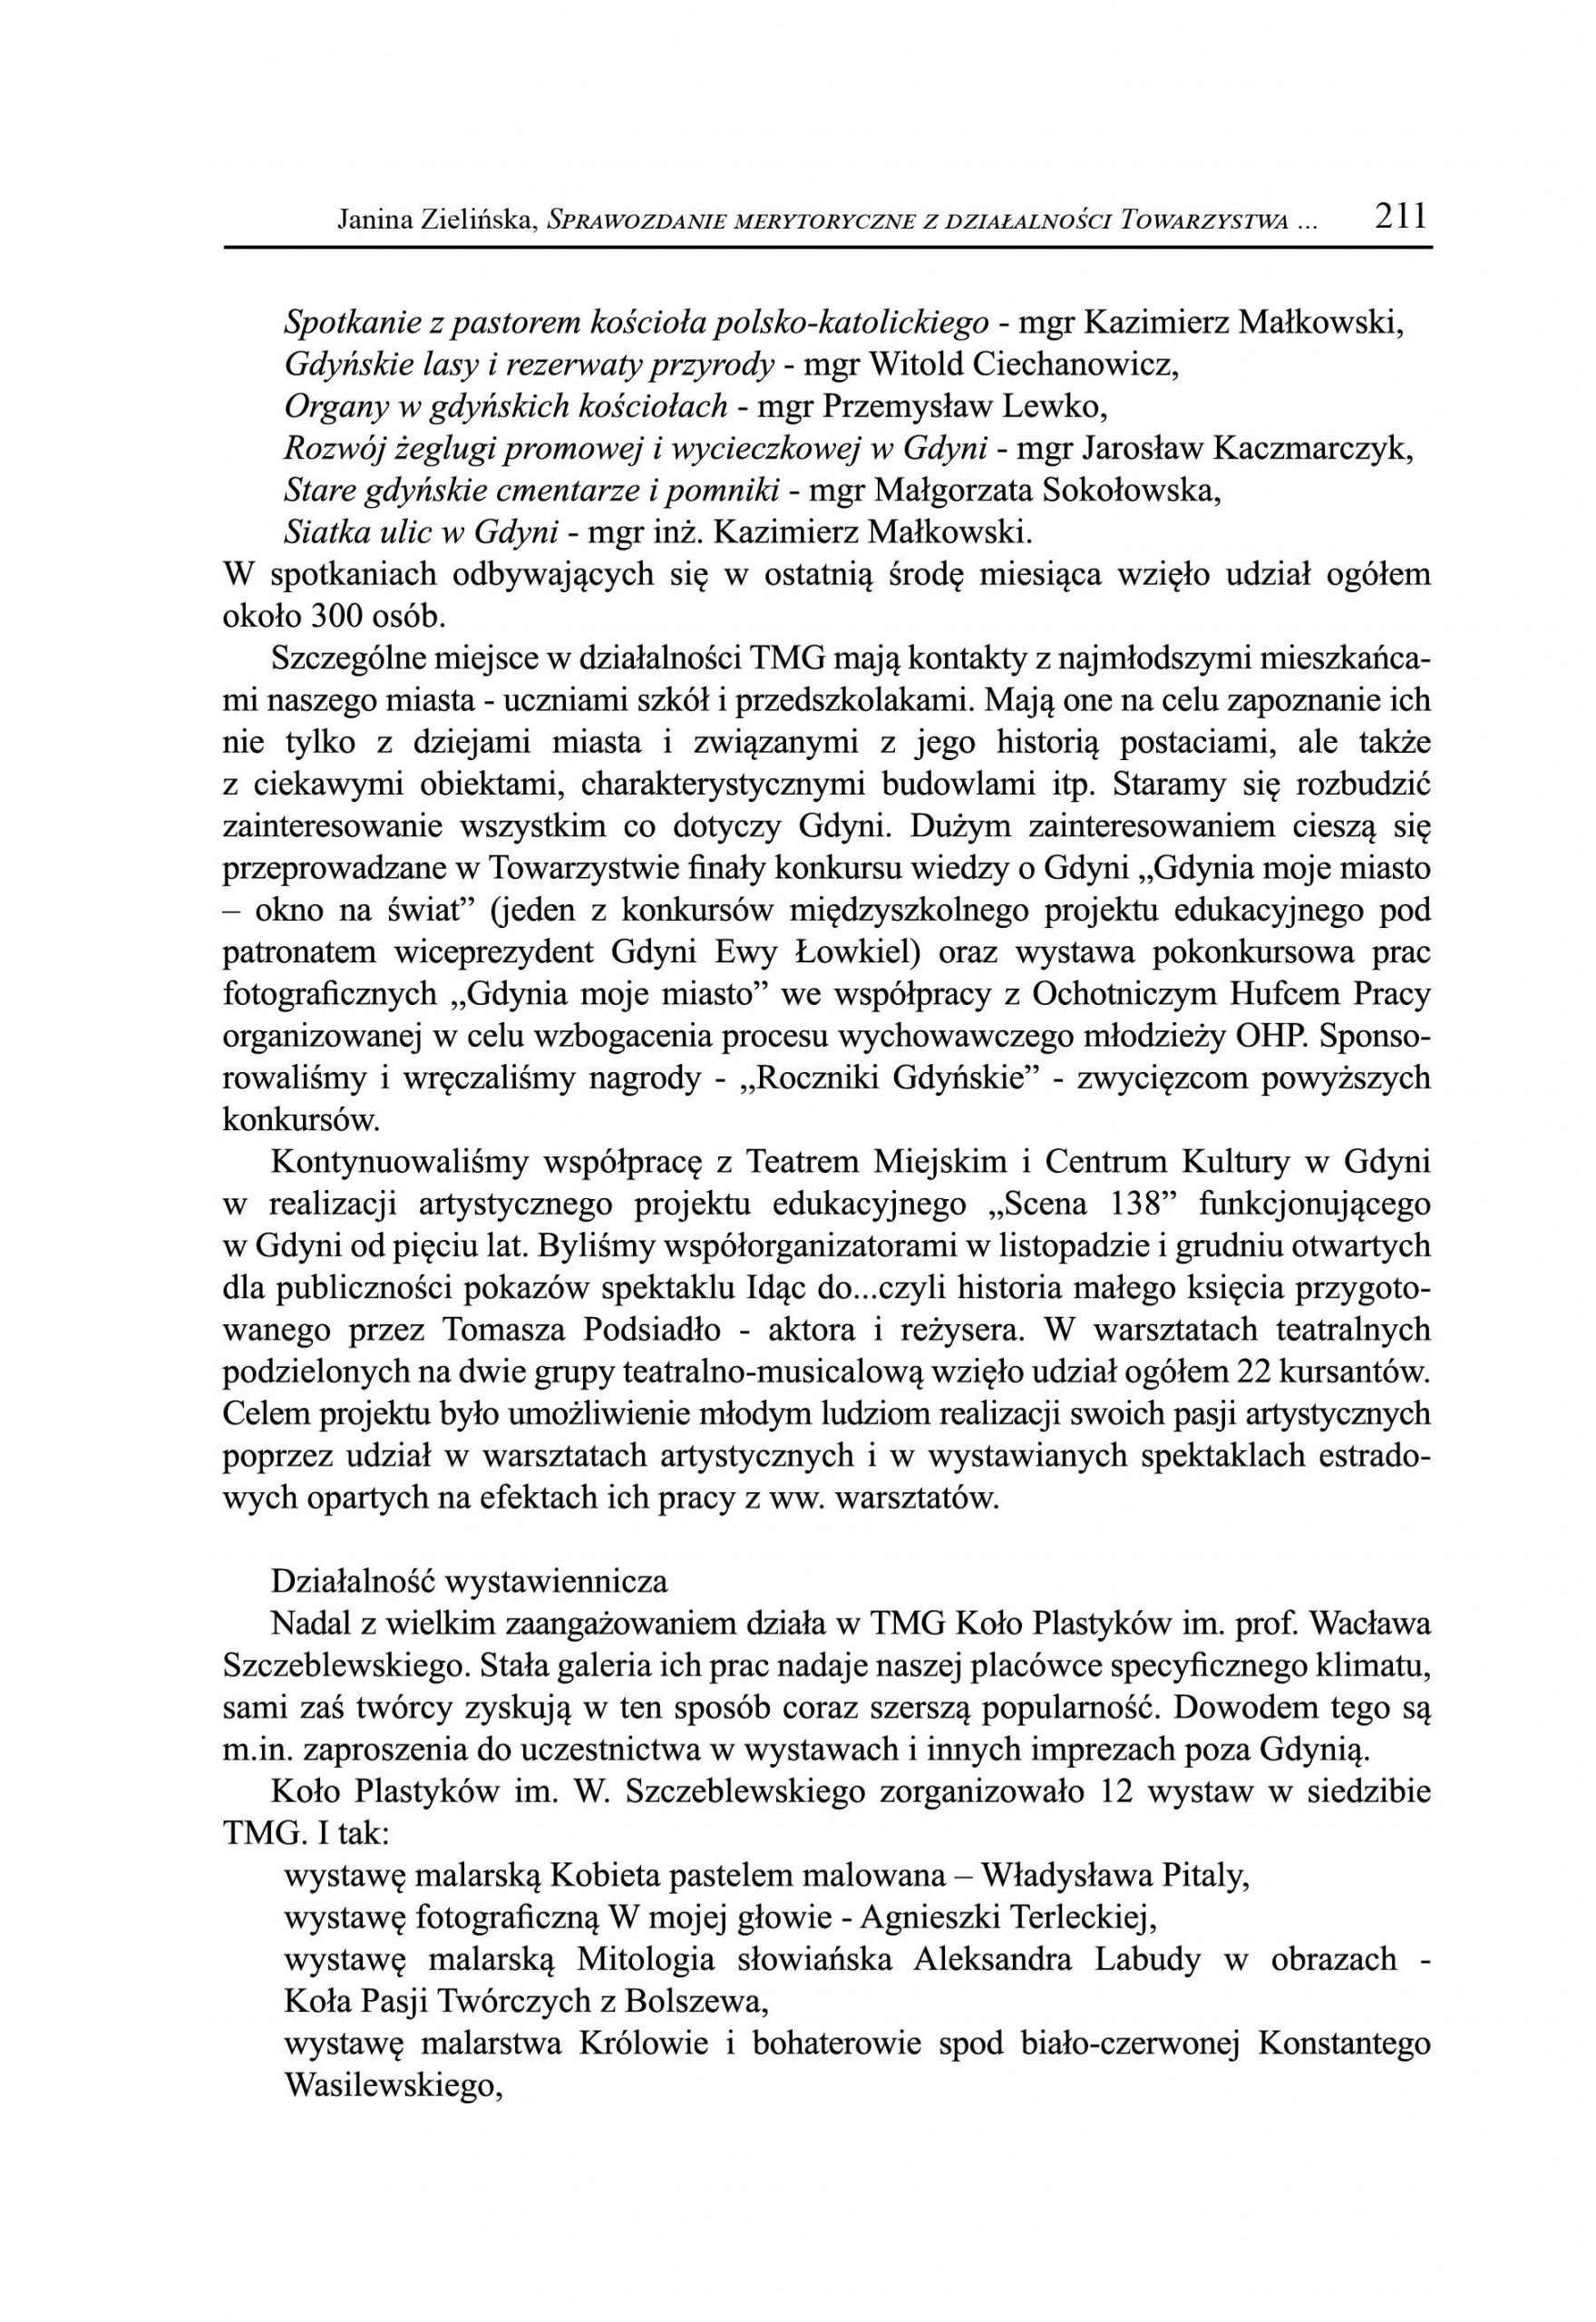 Sprawozdanie merytoryczne z działalności Towarzystwa Miłośników Gdyni za 2011 r.